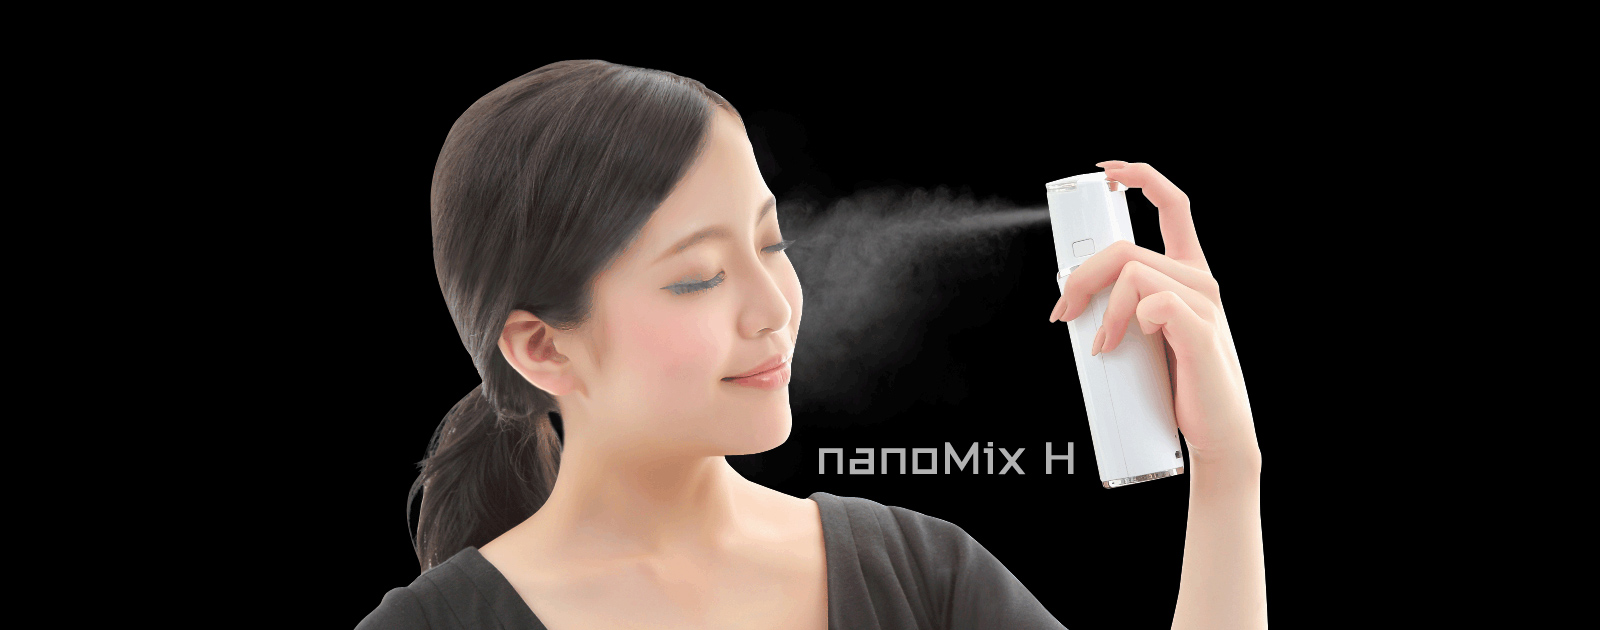 nanoMixH/ナノミックスエイチ